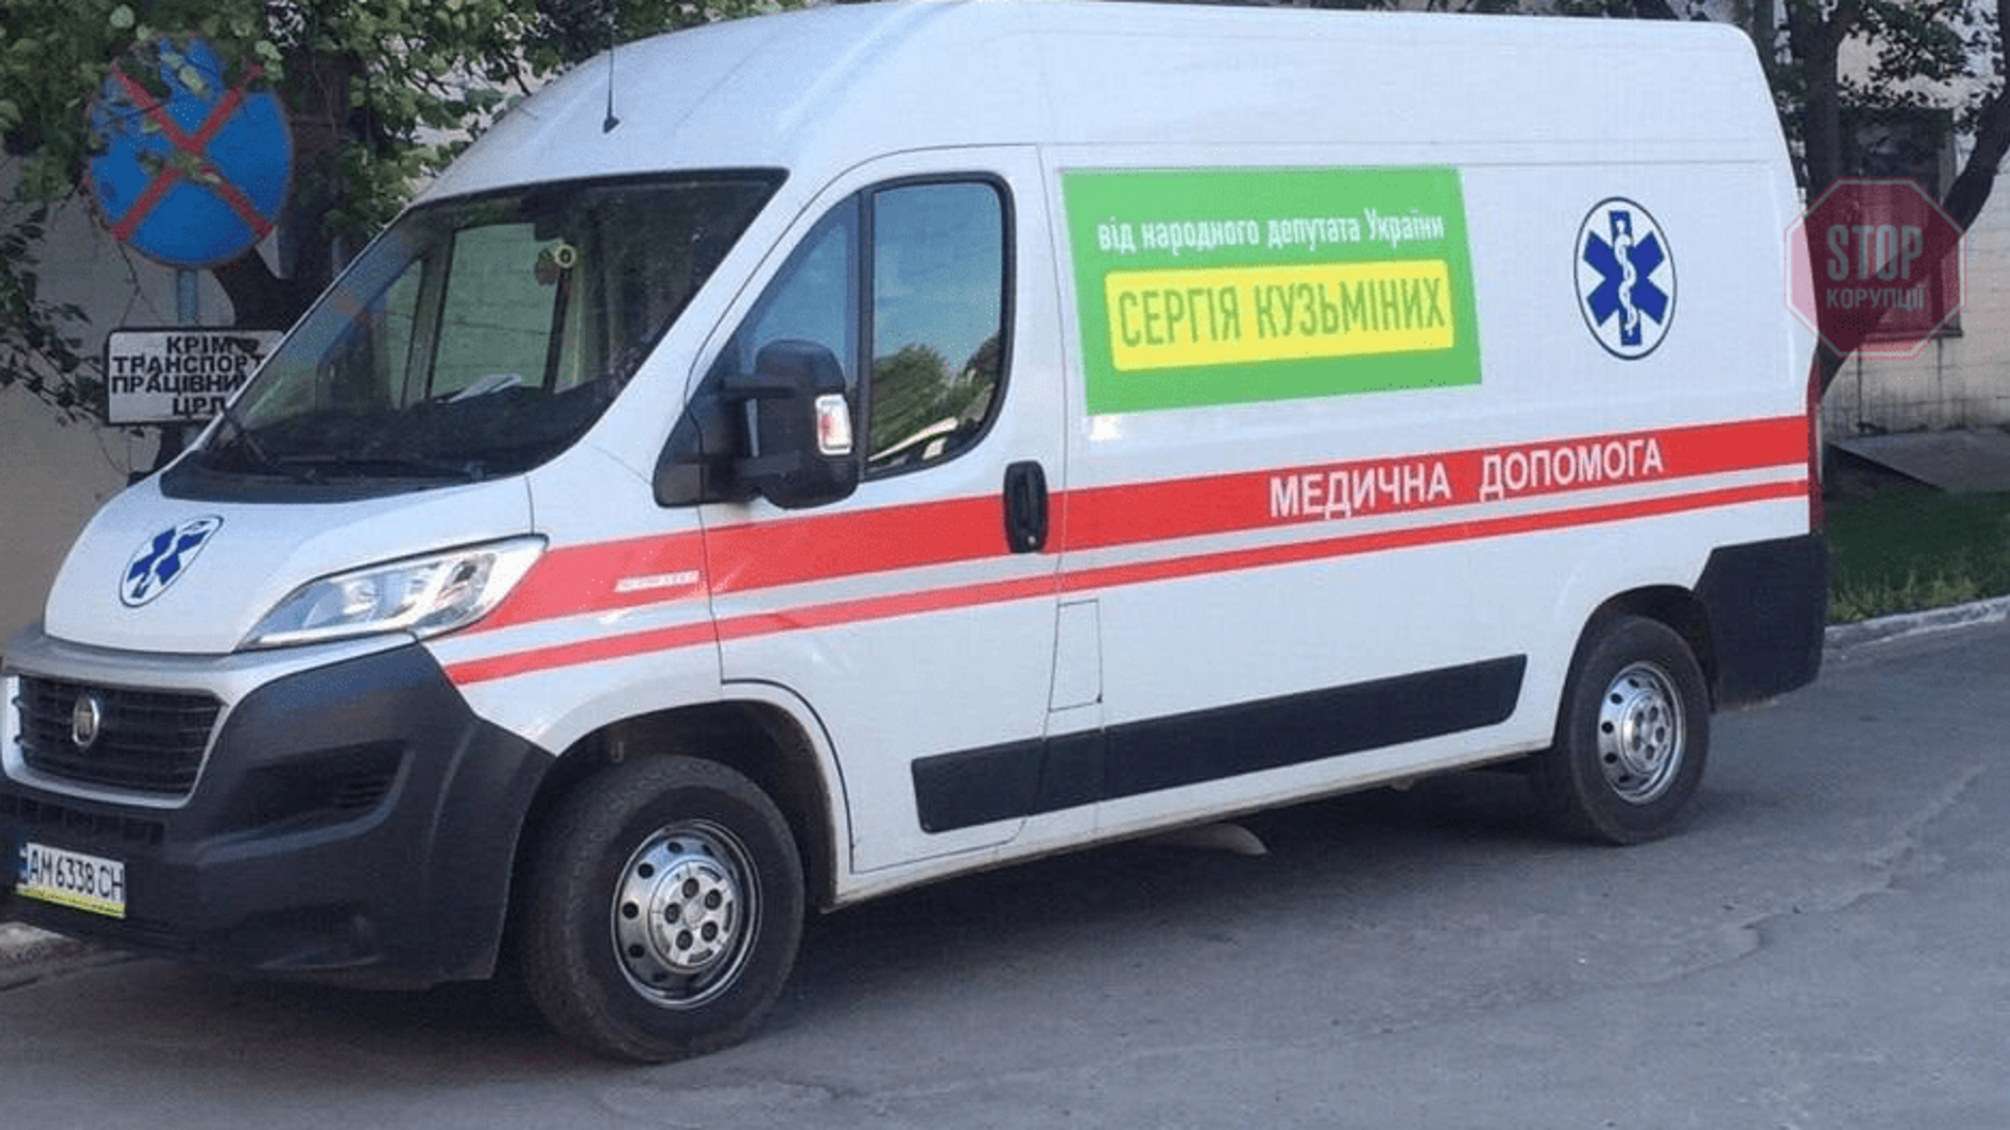 Політична «швидка»: на Житомирщині Зе-нардеп піариться на автівці «медичної допомоги